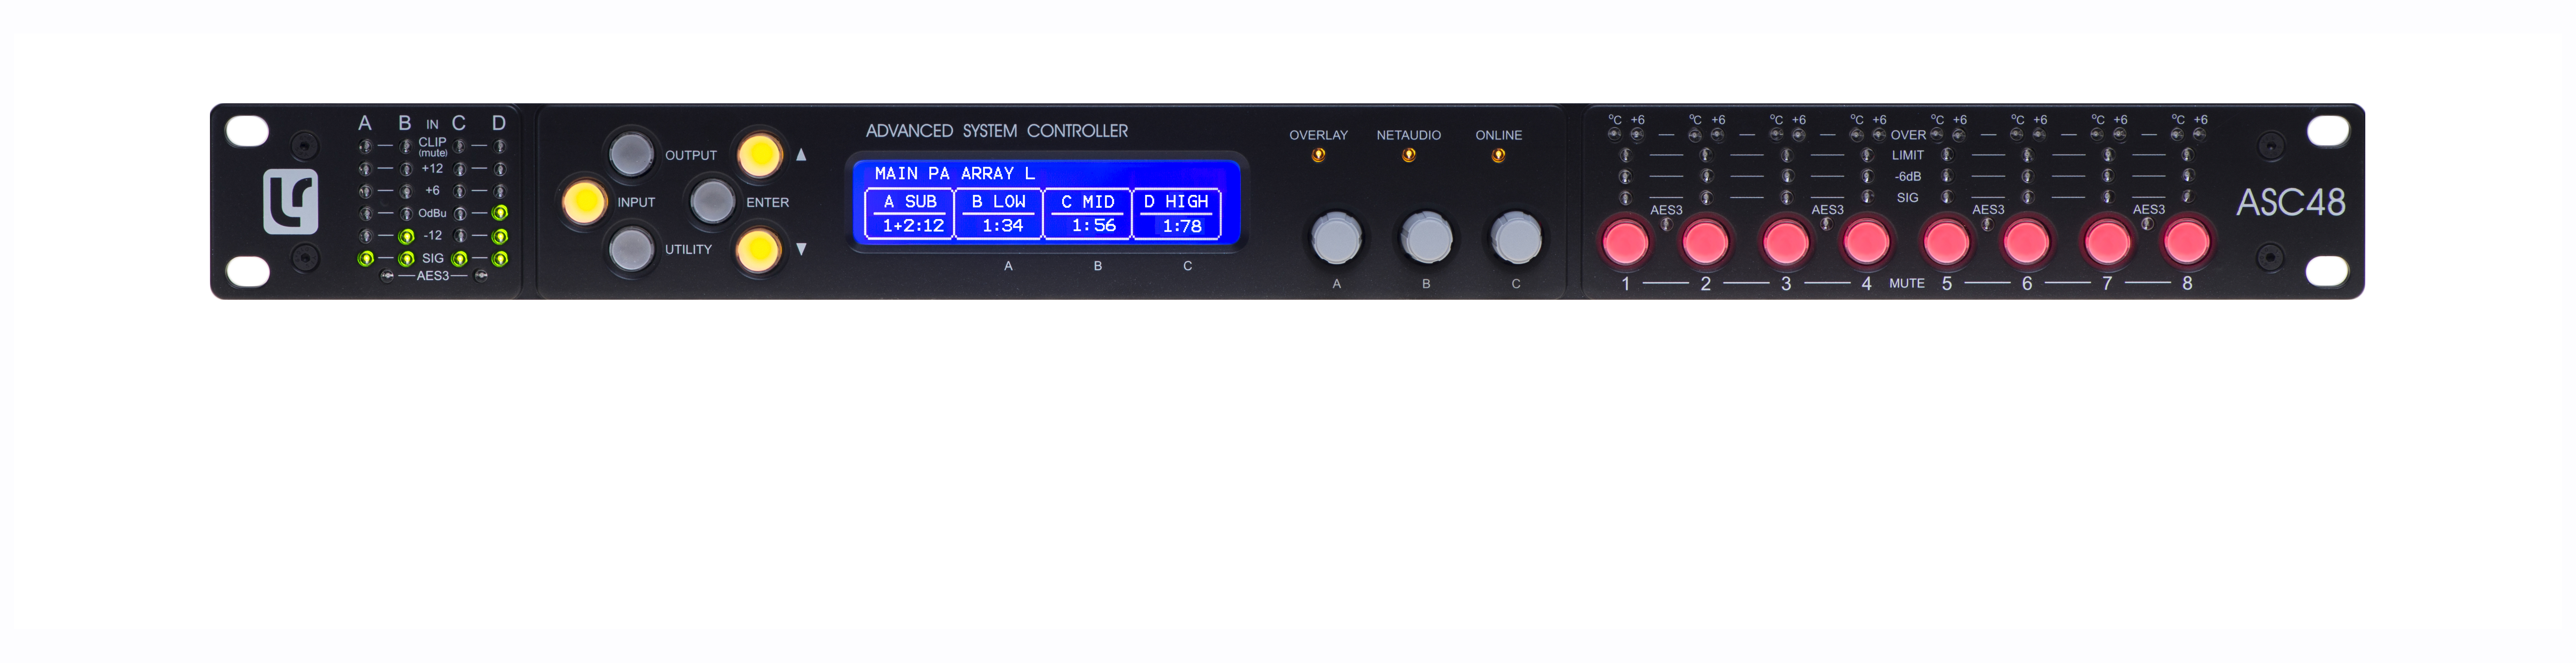 Linea Research ASC48 FIR Audio Controller inkl Dante Card